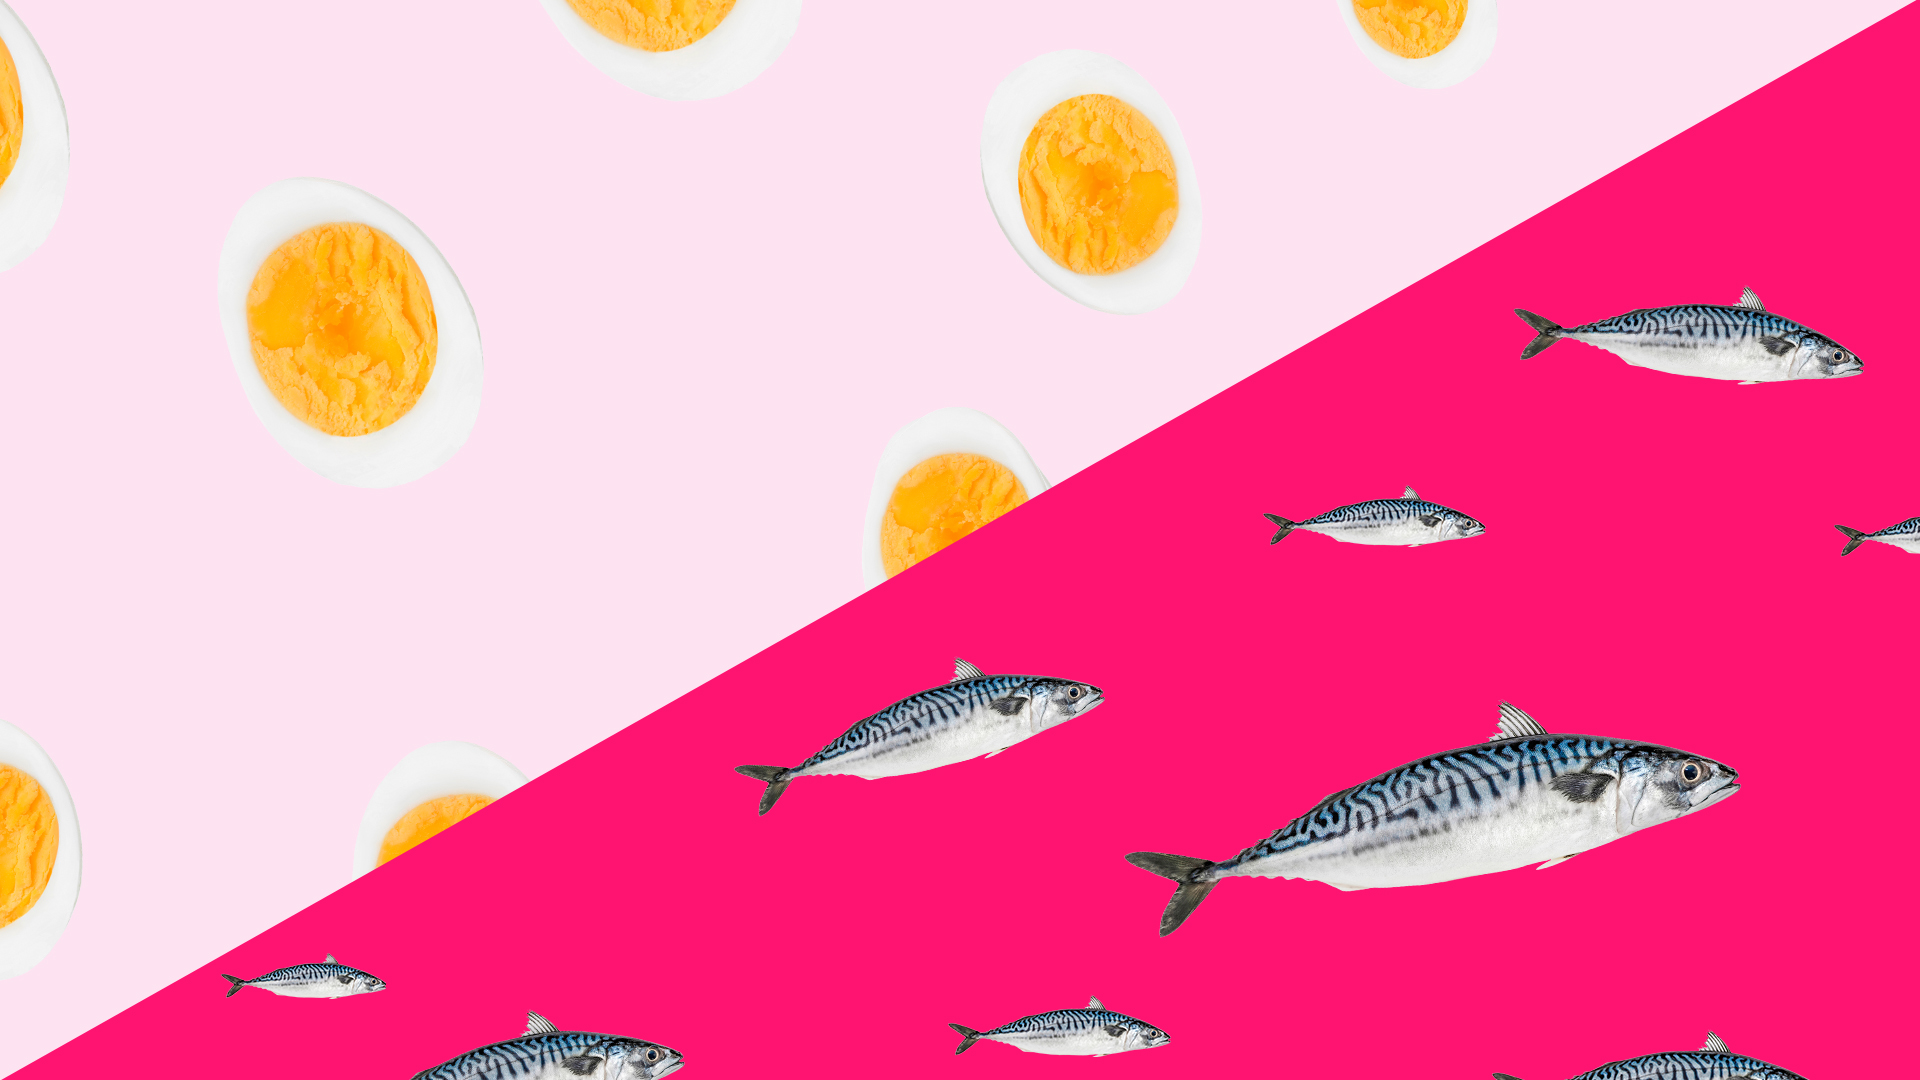 Welke voeding bevordert de spermakwaliteit? Eieren of vette vis? &C x Voedingscentrum